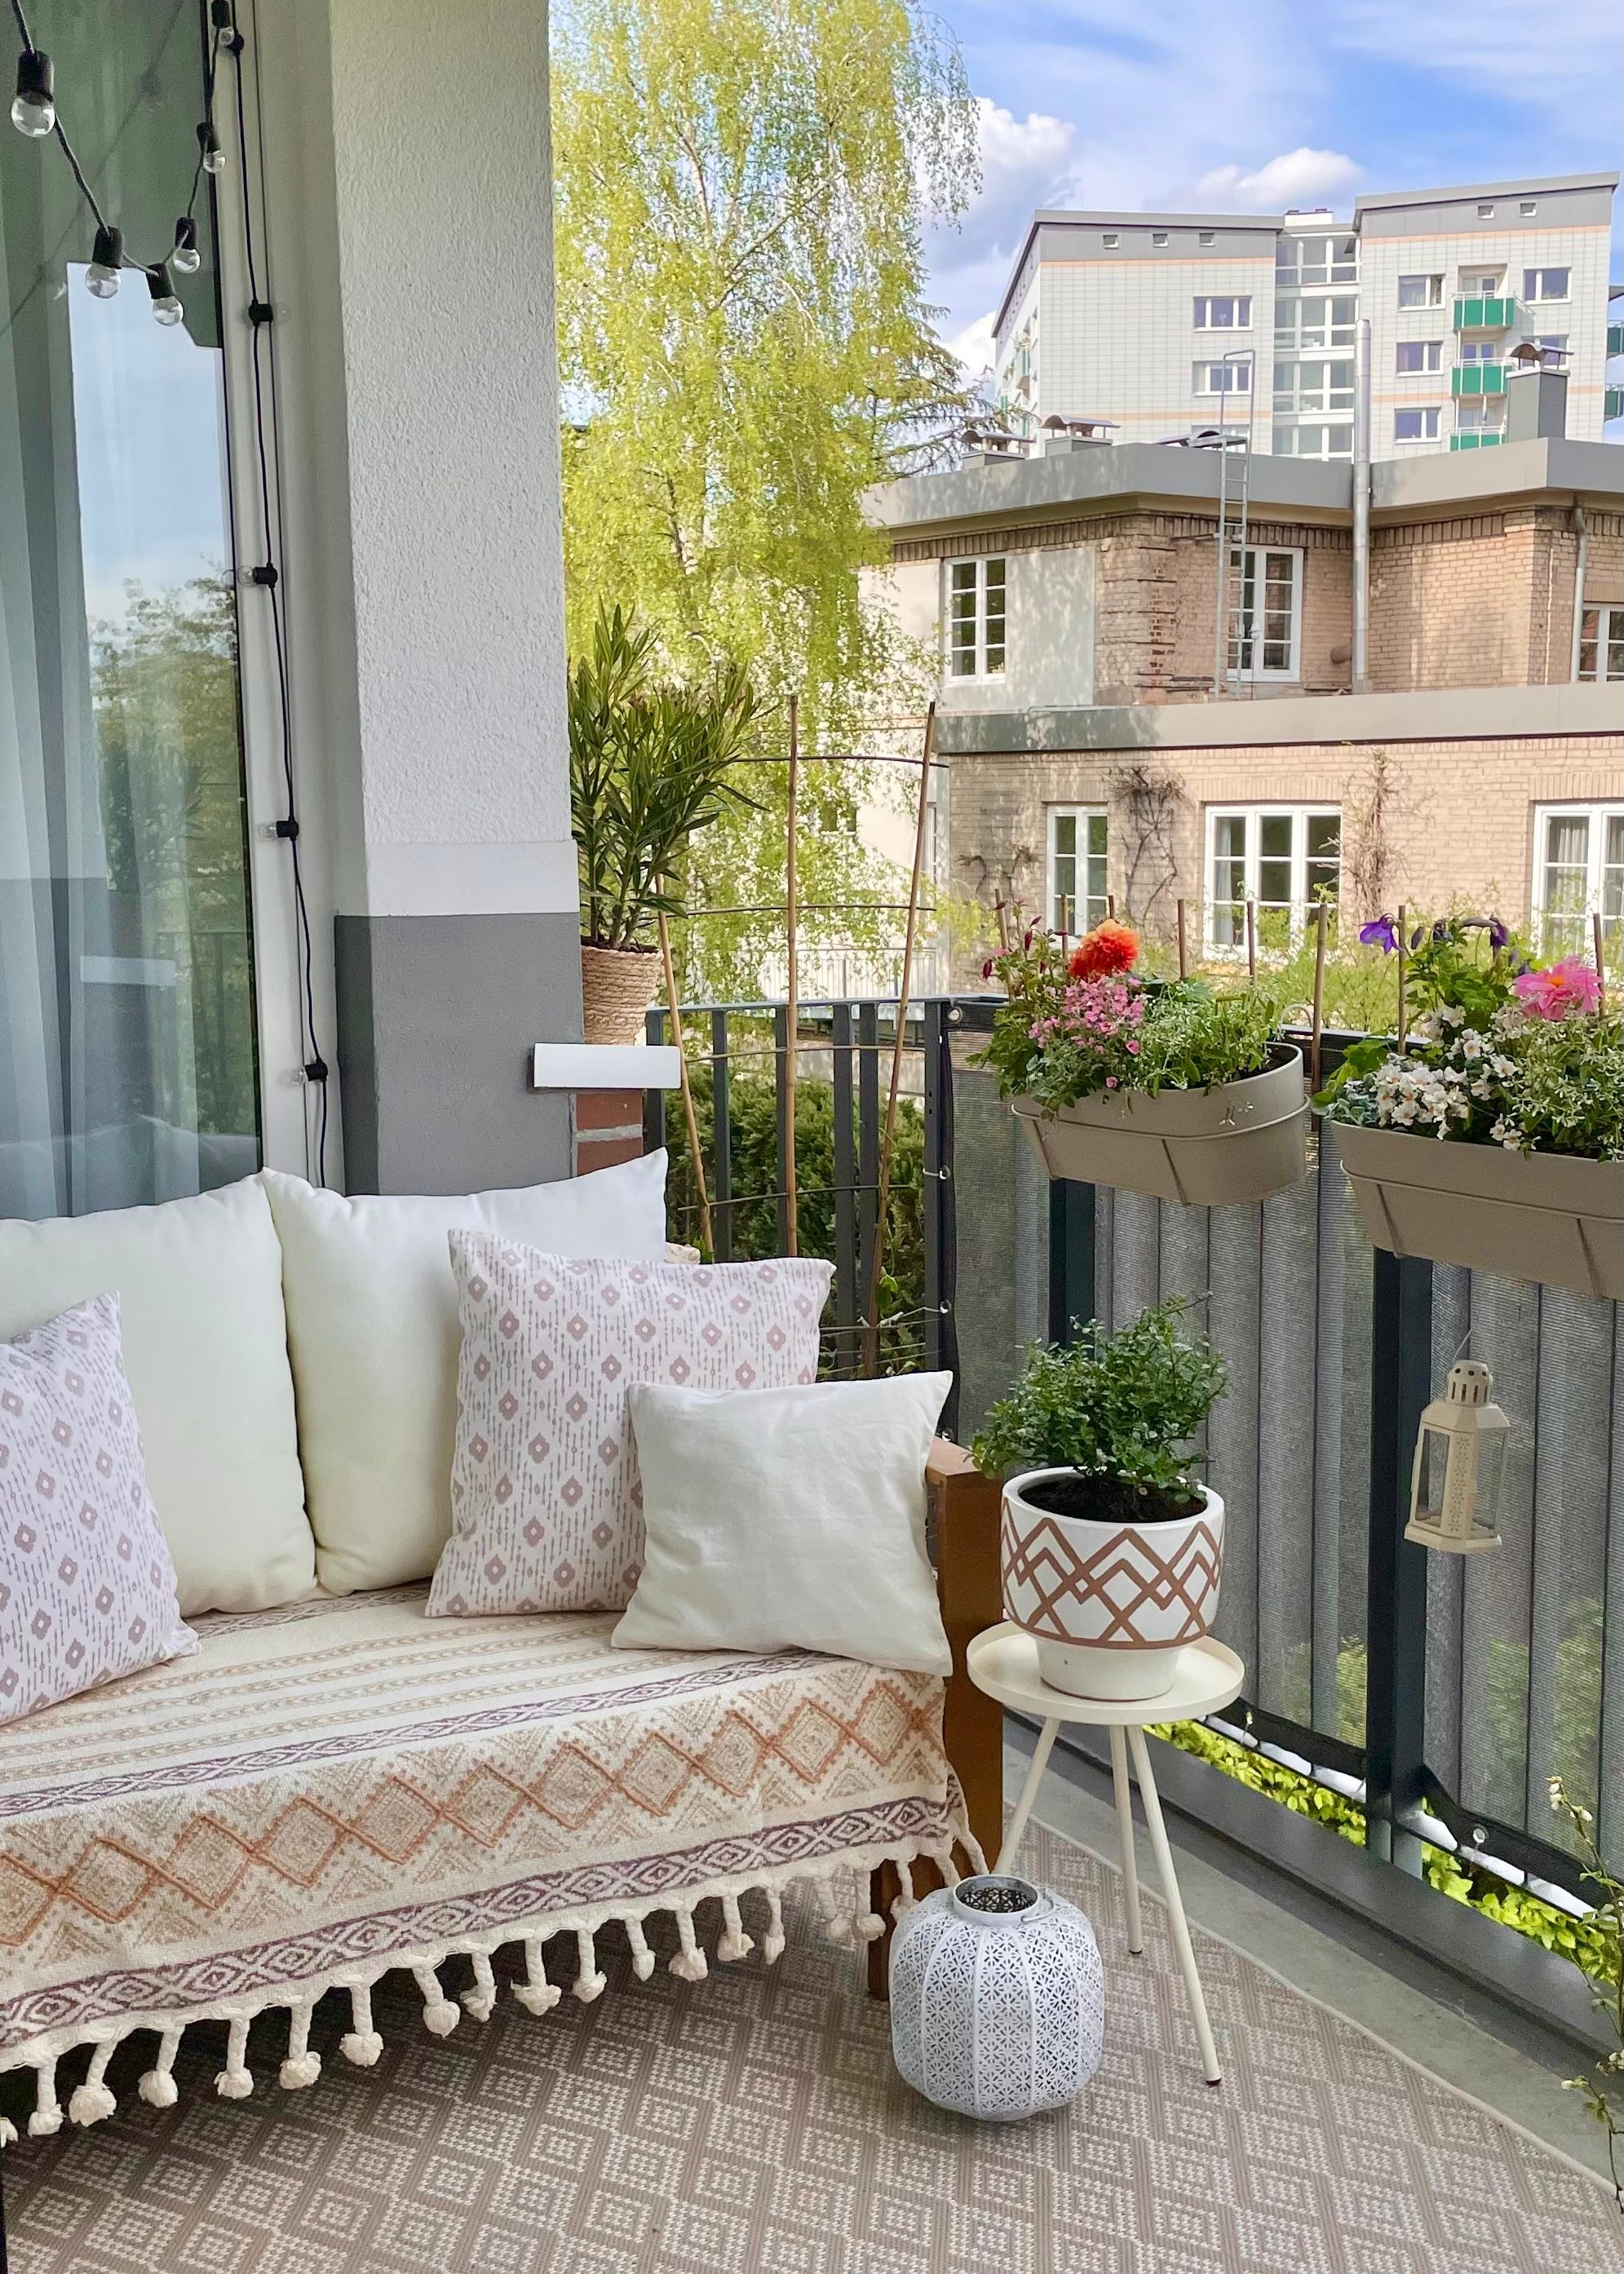 Die Sonne wird gebeten auf den Balkon zu kommen. Die Sonne bitte! 😂🌞 #balkonideen #balkon #balkonpflanzen #balkonmöbel